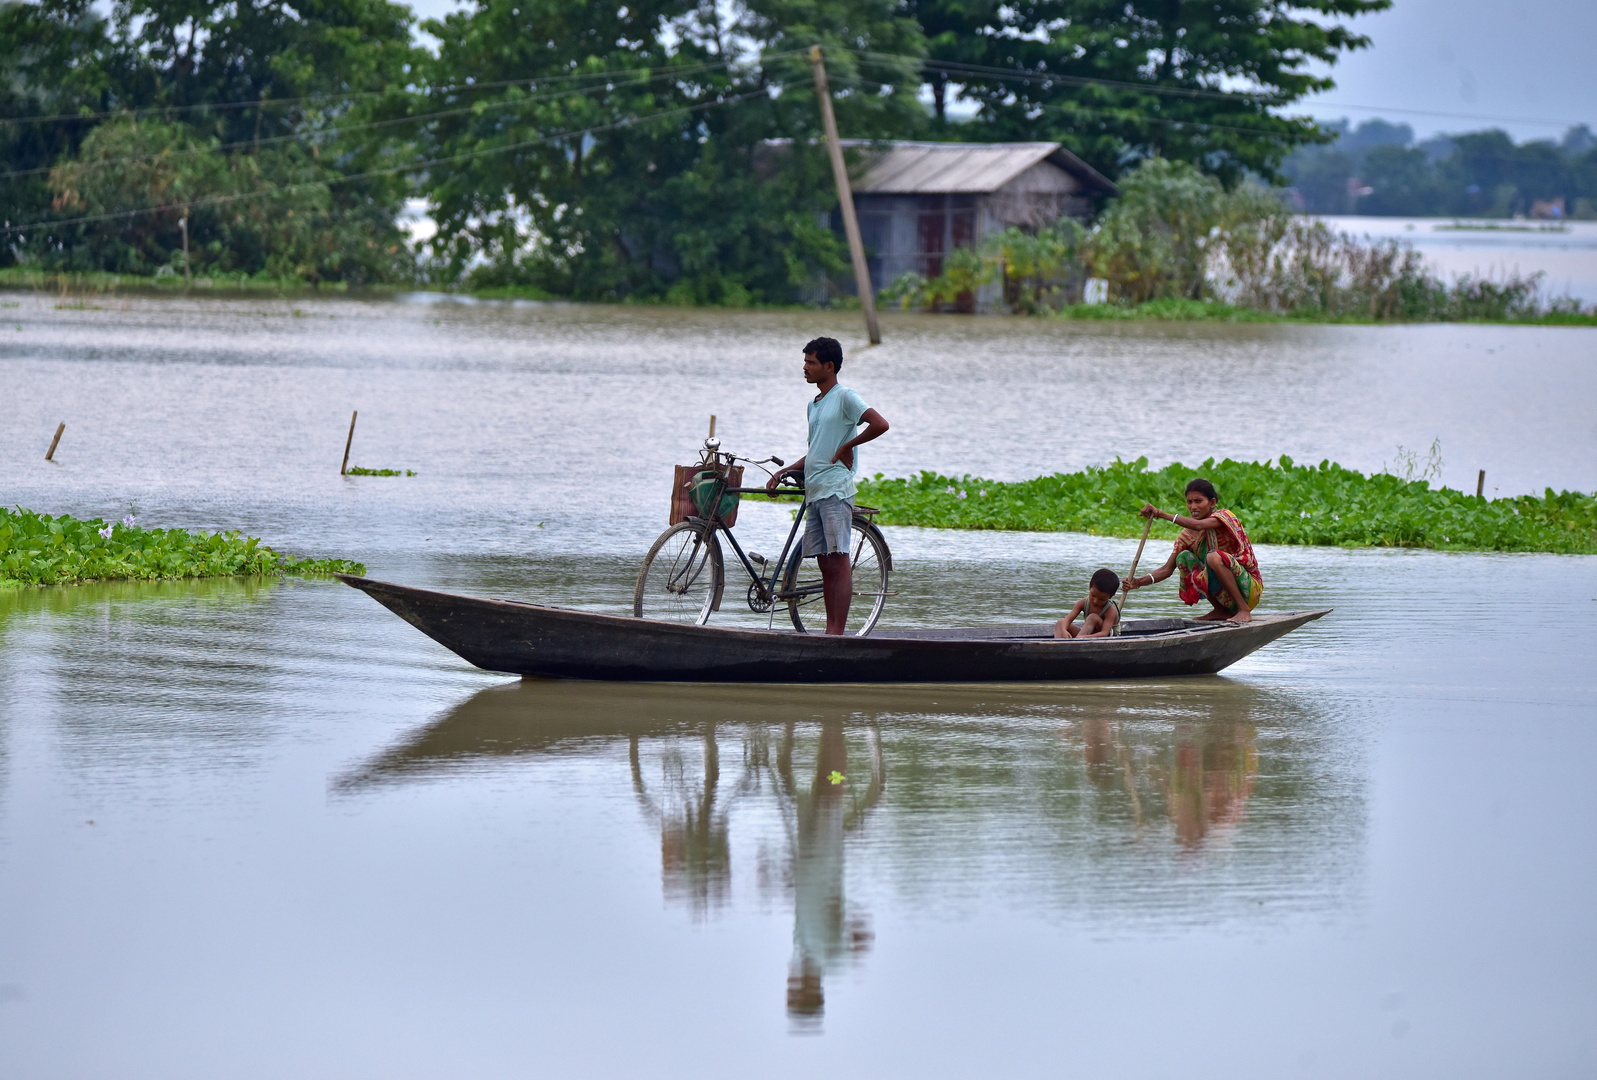 الفيضانات تشل الحياة في تشيناي عاصمة الهند الصناعية